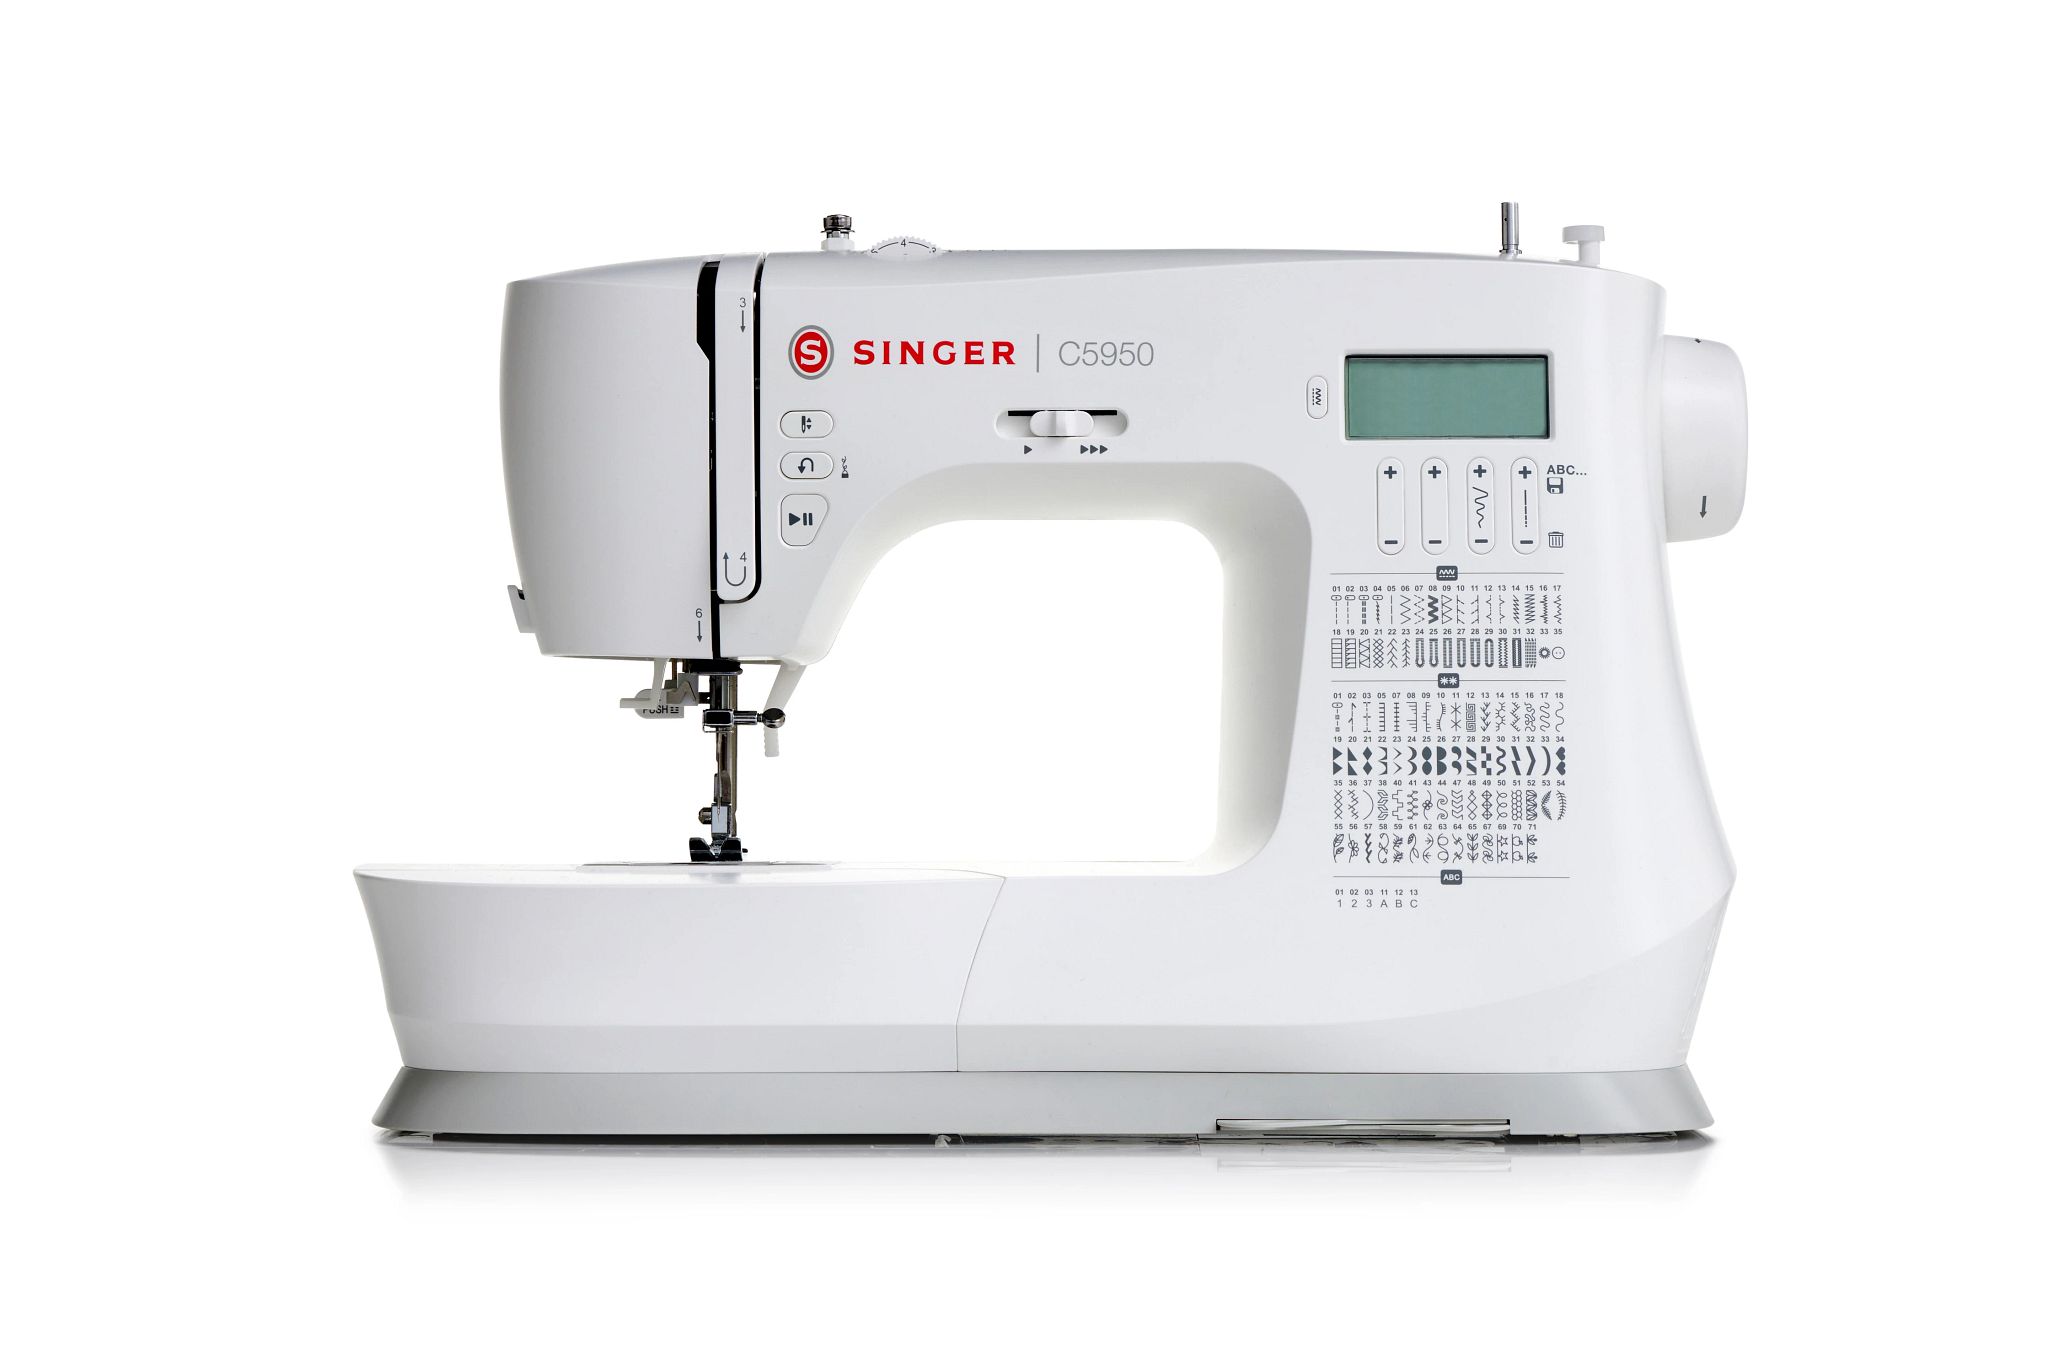 C5900 singer sewing machine